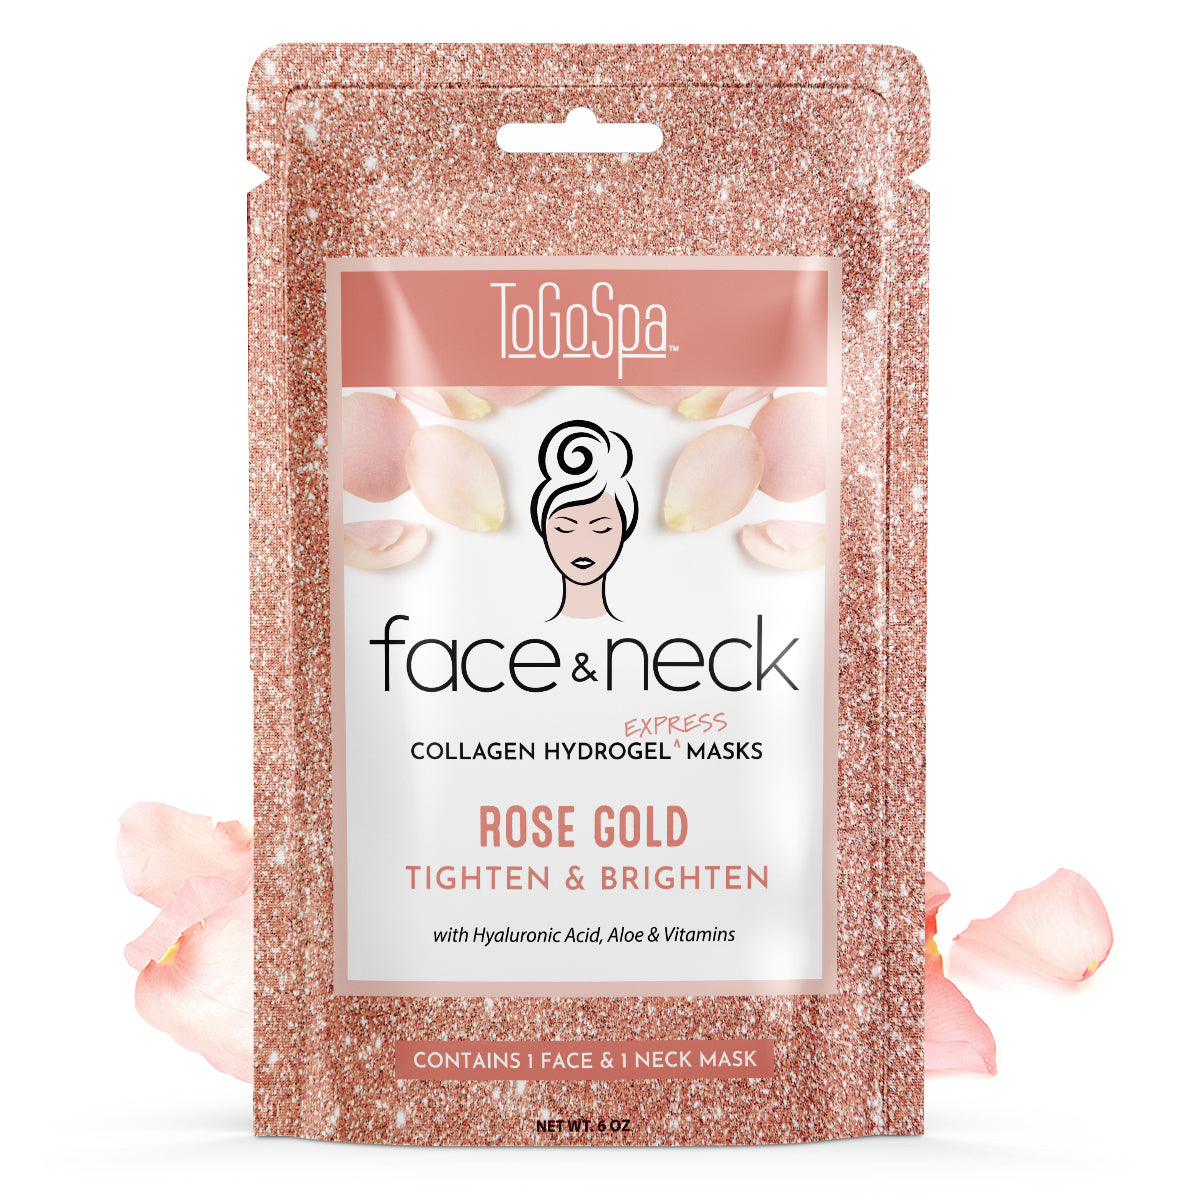 Rose Gold Face & Neck Express Masks